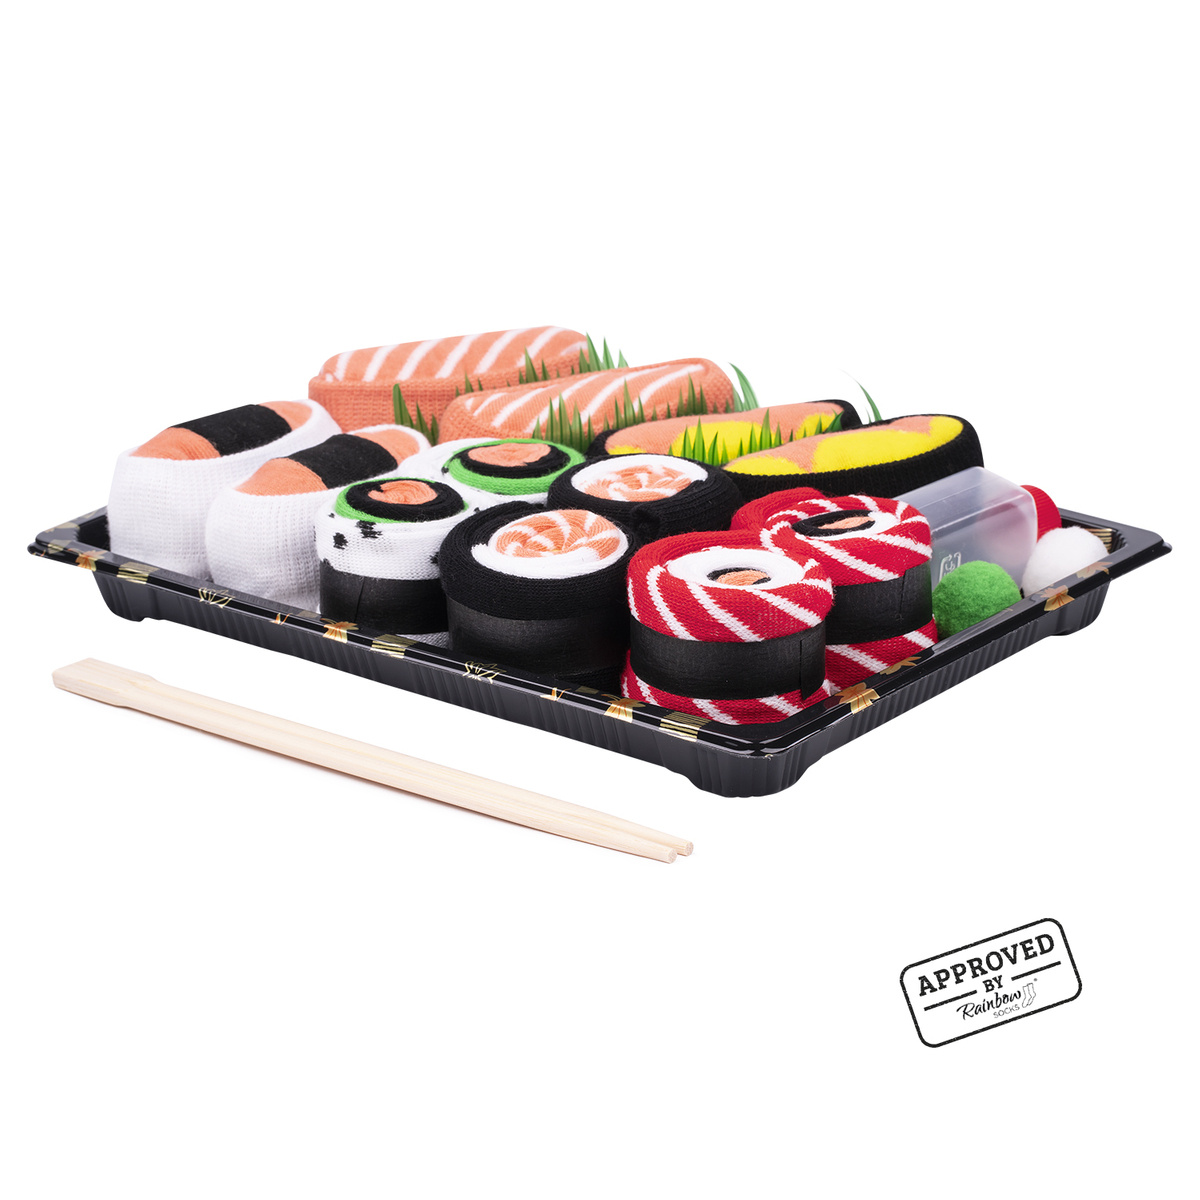 https://soxo.it/ita_pl_Set-di-6-calzini-colorati-SOXO-sushi-in-una-scatola-23767_3.jpg